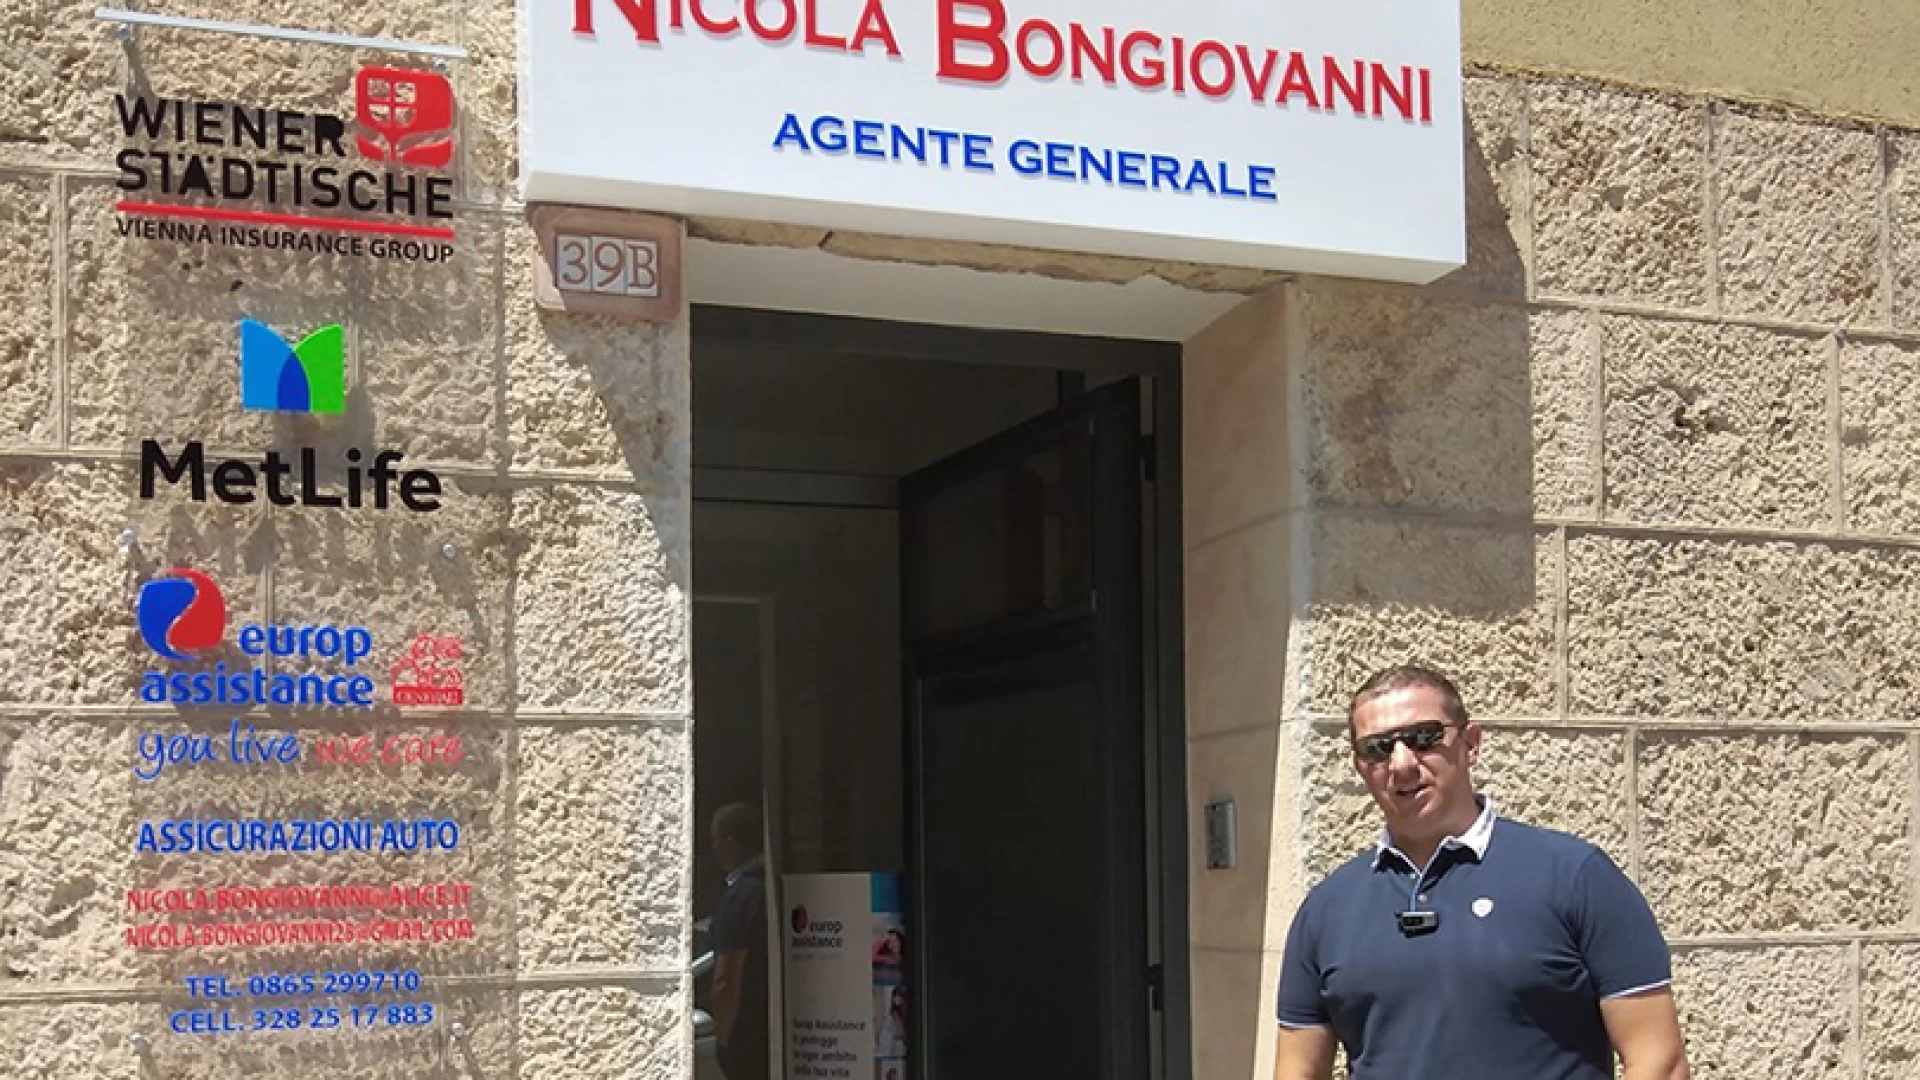 Isernia: nuova sede per l’Agenzia Assicurativa di Nicola Bongiovanni. L’apertura in via XXIV Maggio. Si cerca personale da formare.